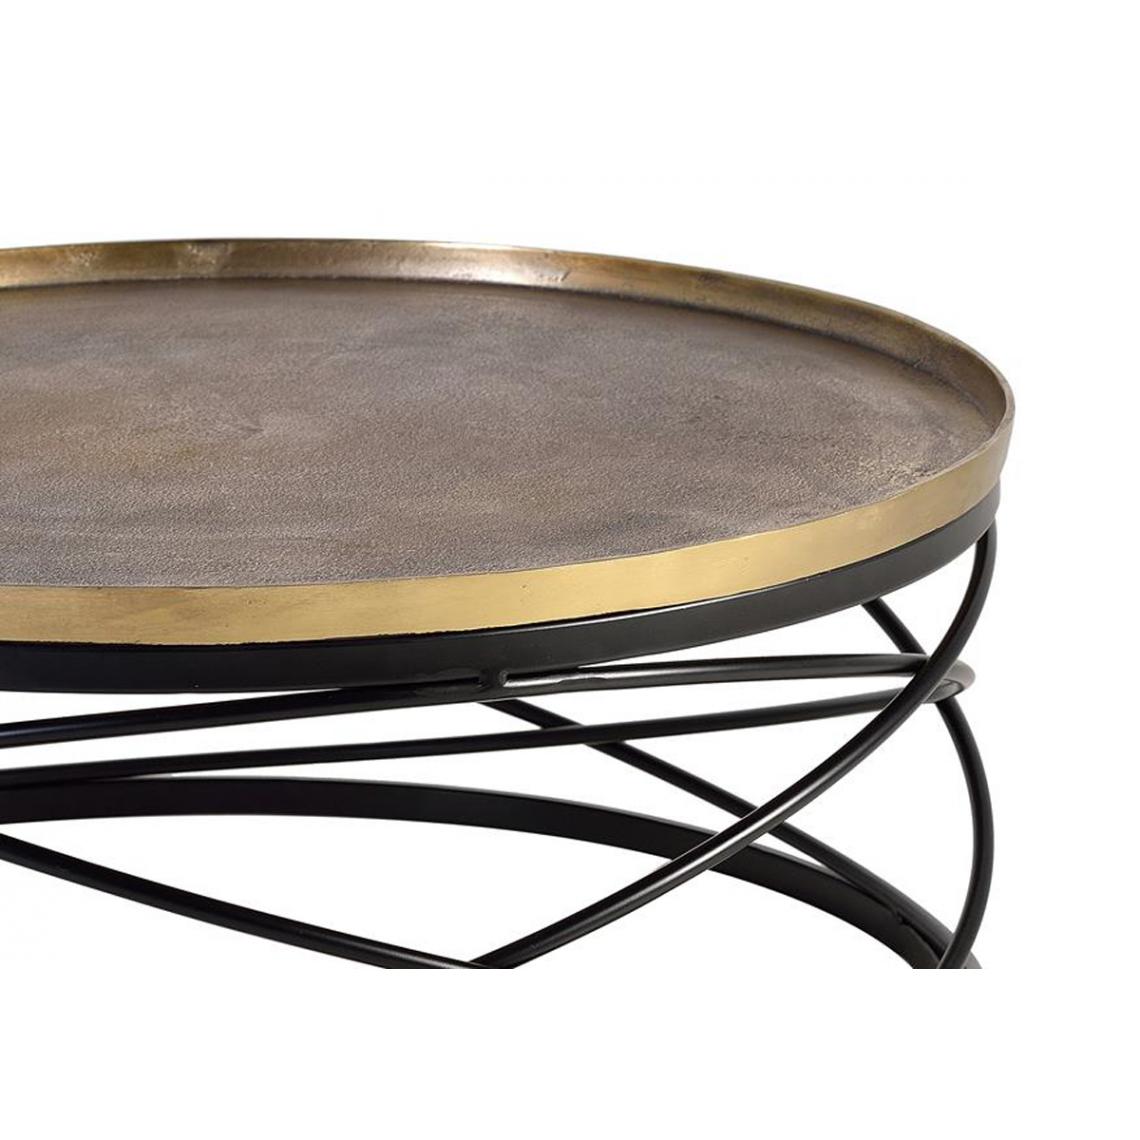 Pegane - Table basse en métal coloris noir / doré - diamètre 90 x hauteur 38 cm - Tables basses